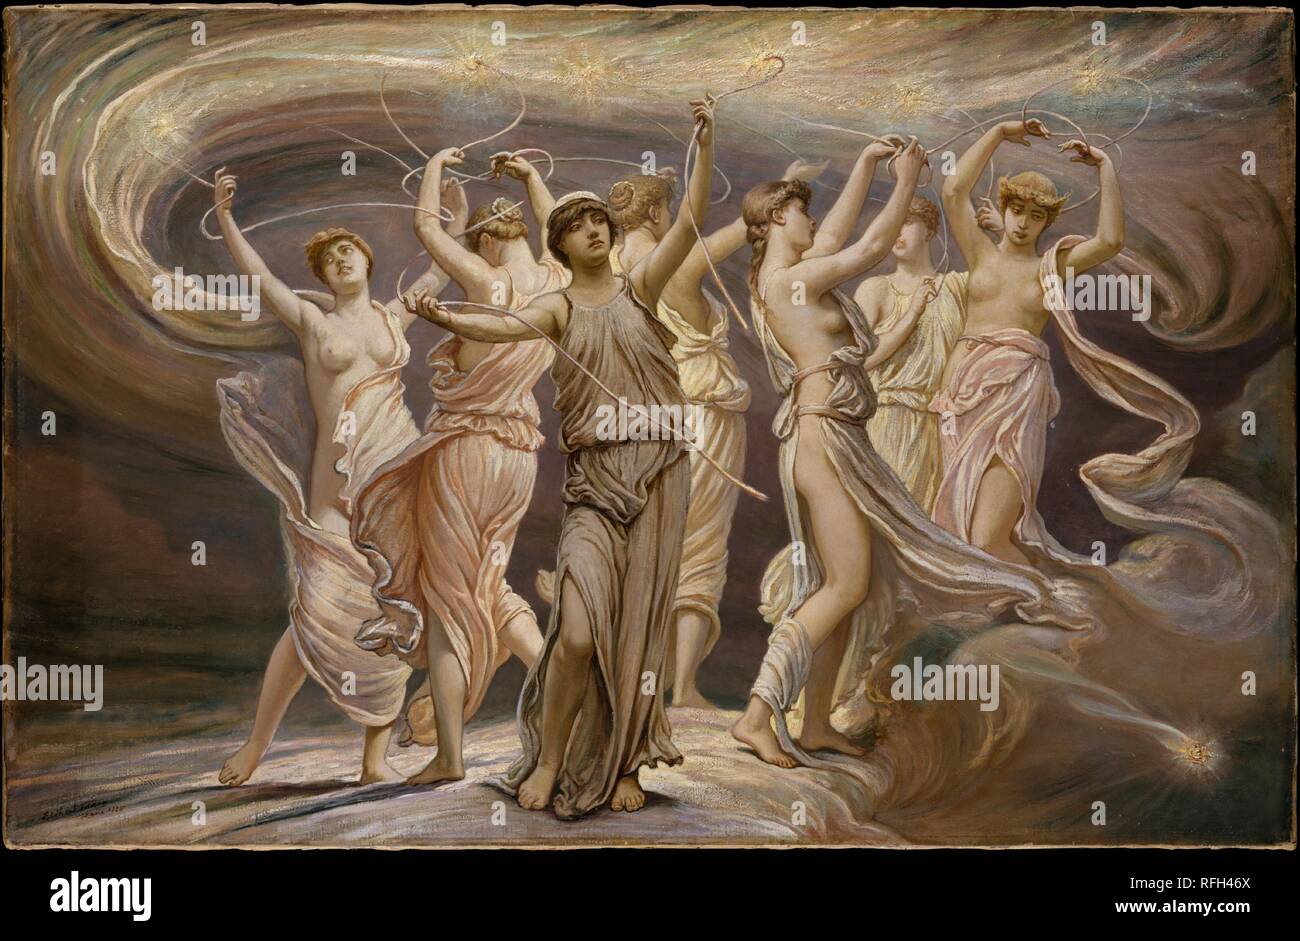 Les Pléiades. Artiste : Elihu Vedder (American, New York 1836-1923 Rome). Dimensions : 24 1/8 x 37 5/8 in. (61,3 x 95,6 cm). Date : 1885. Selon la mythologie grecque, les Pléiades étaient les sept filles d'Atlas et de la nymphe Pléioné. Vedder utilisé les Pléiades comme son sujet pour la première illustration dans le 'Rubaiyat d'Omar Khayyam'. Les sept personnages féminins représentent l'horoscope de l'astronome-poète, Omar Khayyam. Les deux influences de Jupiter et les Pléiades, connecté par le plaisir de la vigne, sont symbolisés par le thread qui entwines-les. La figure centrale, dont le fil conducteur est brok Banque D'Images